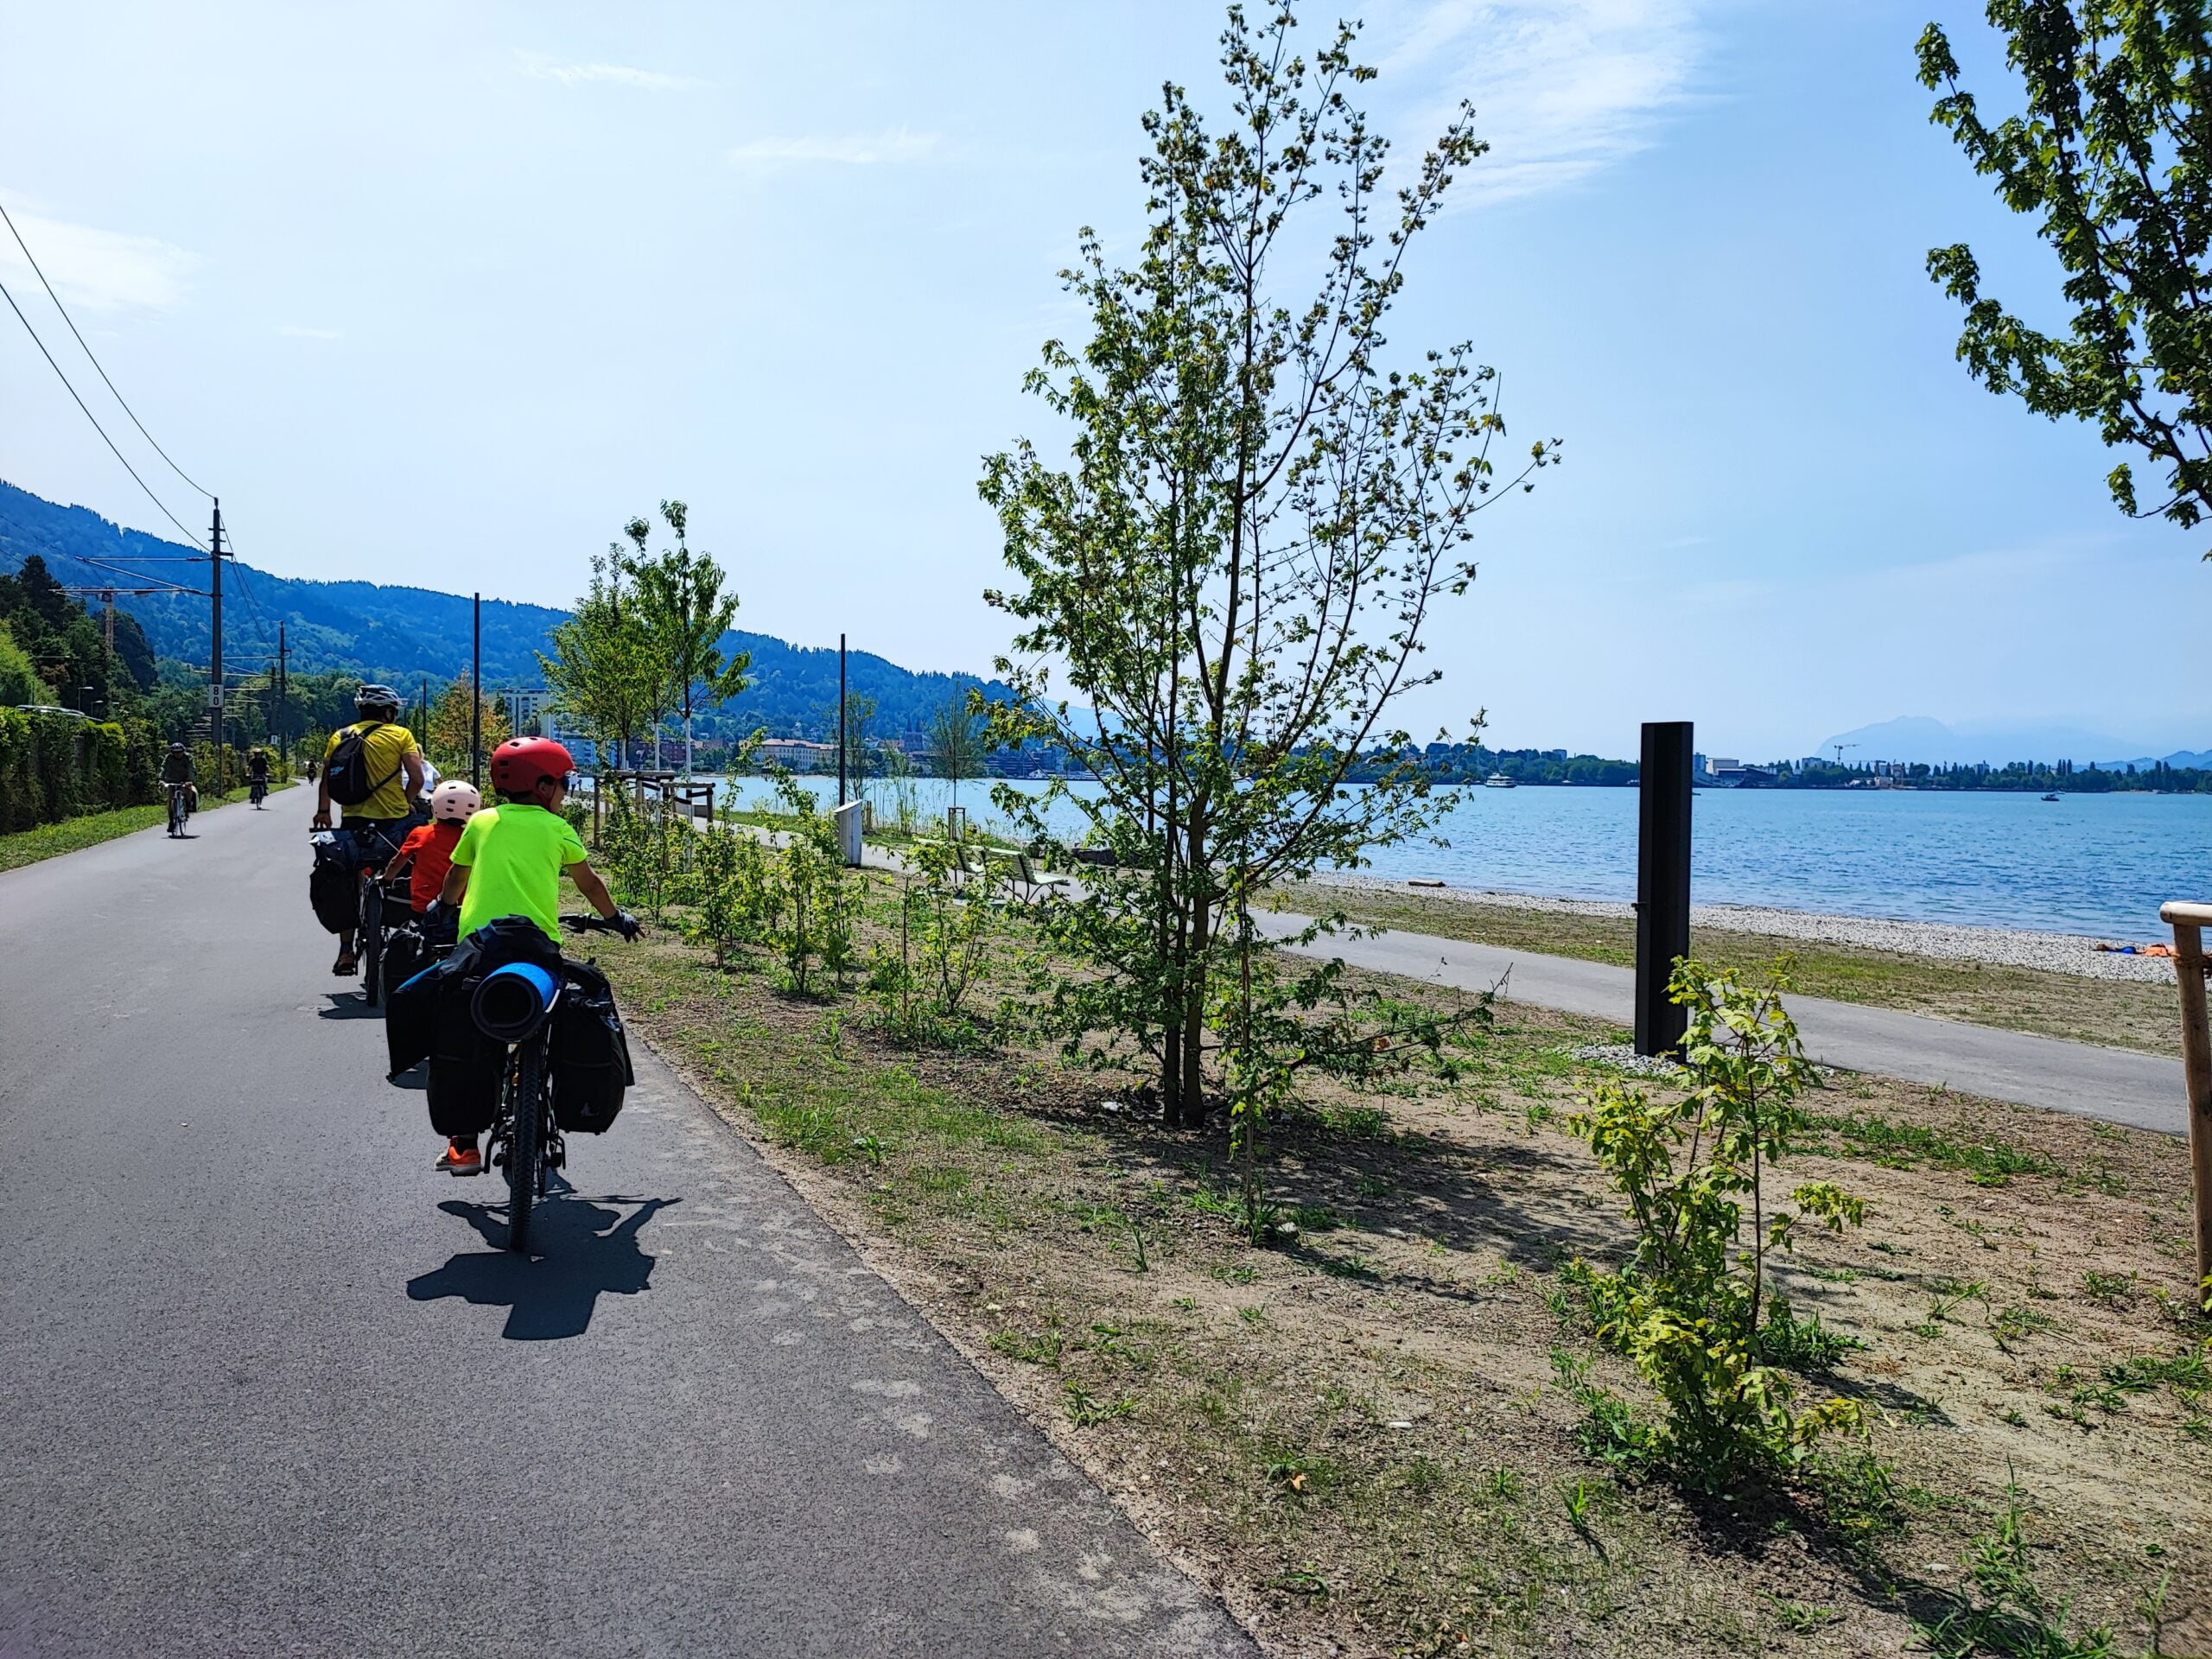 En este momento estás viendo Etapa 5: Visita al Lago Constanza en Austria desde la bonita Lindau disfrutando de Bregenz en nuestra última etapa del Lago Constanza en bicicleta